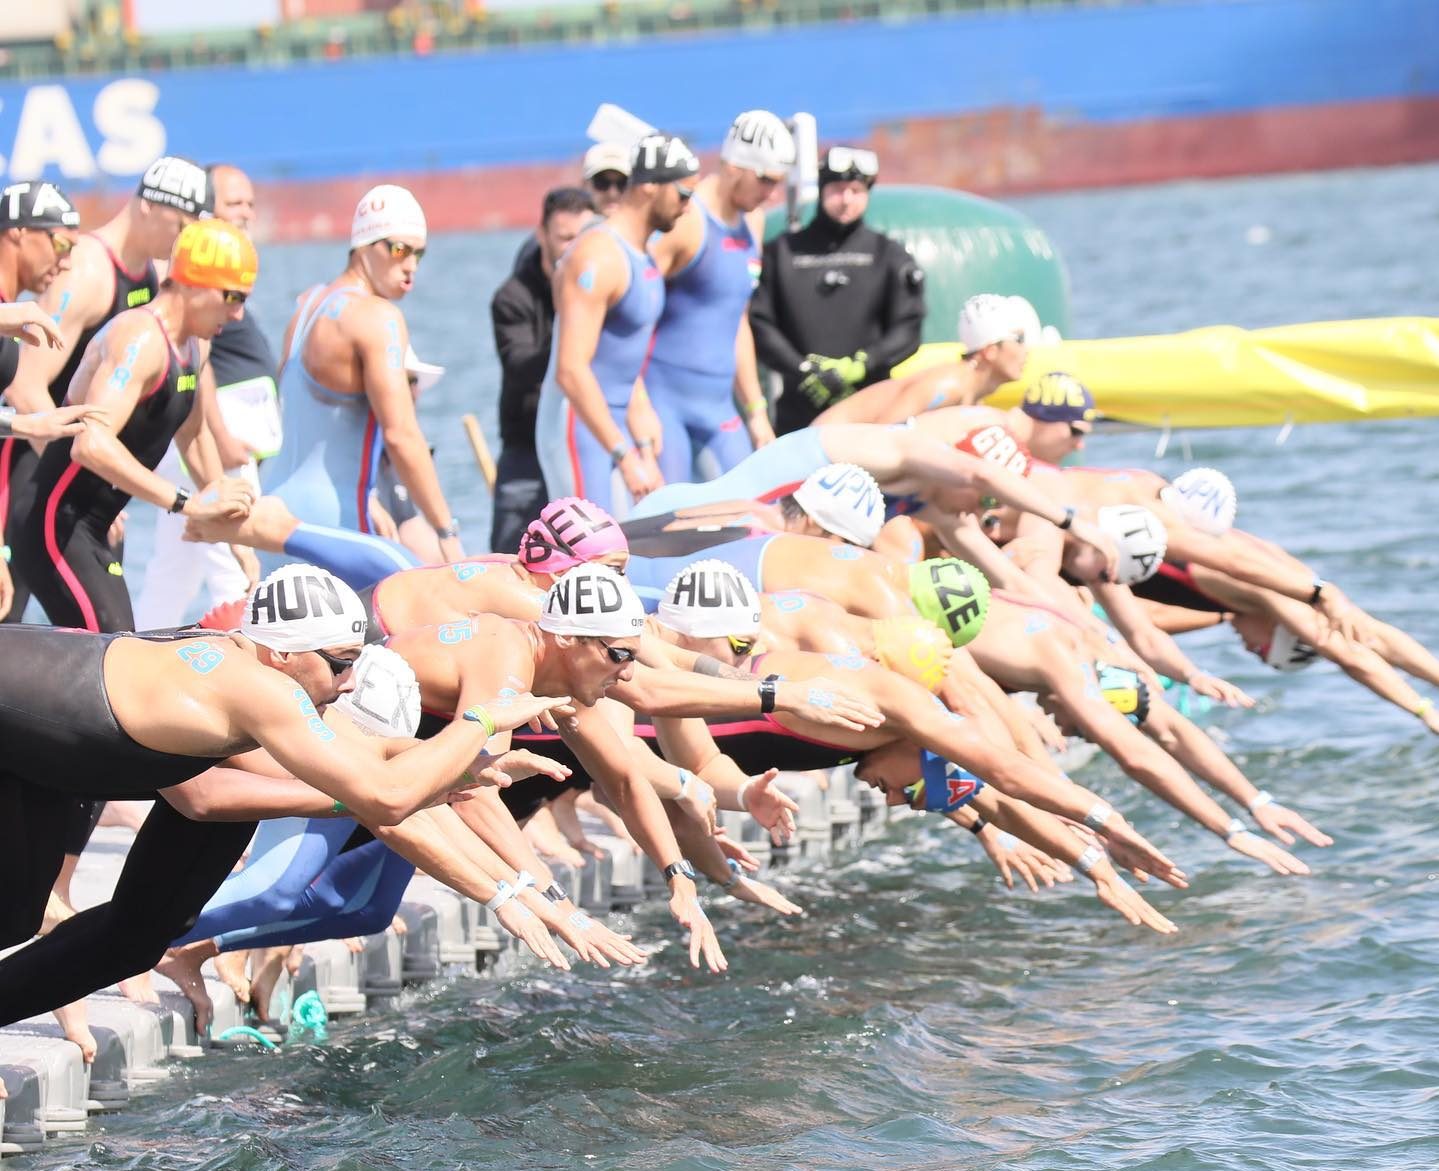 Ungarische Staffel gewinnt Goldmedaille beim Freiwasserschwimmen-Weltcup